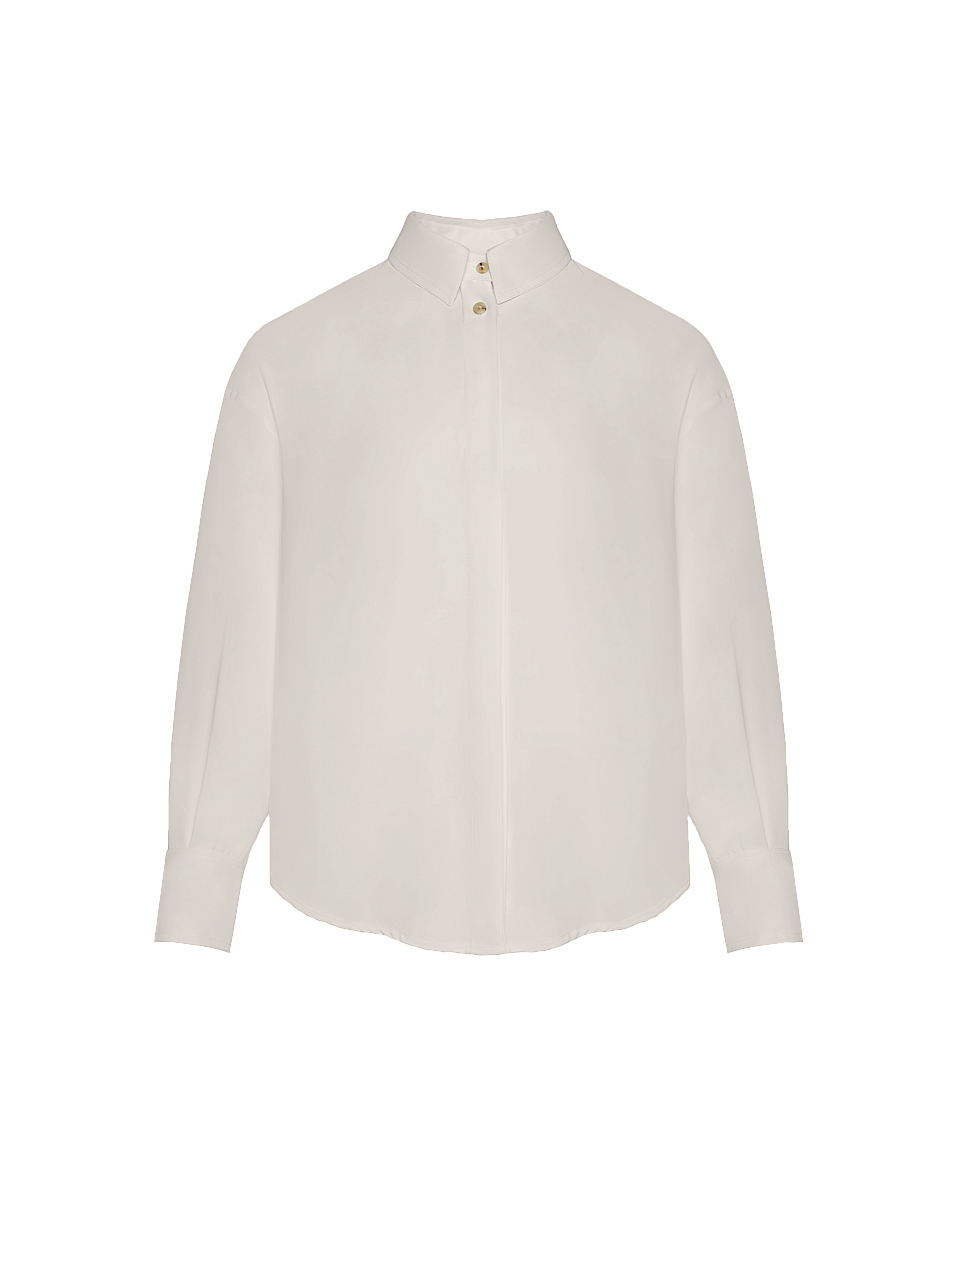 Жіноча блуза Stimma Дамаріс, колір - кремовий